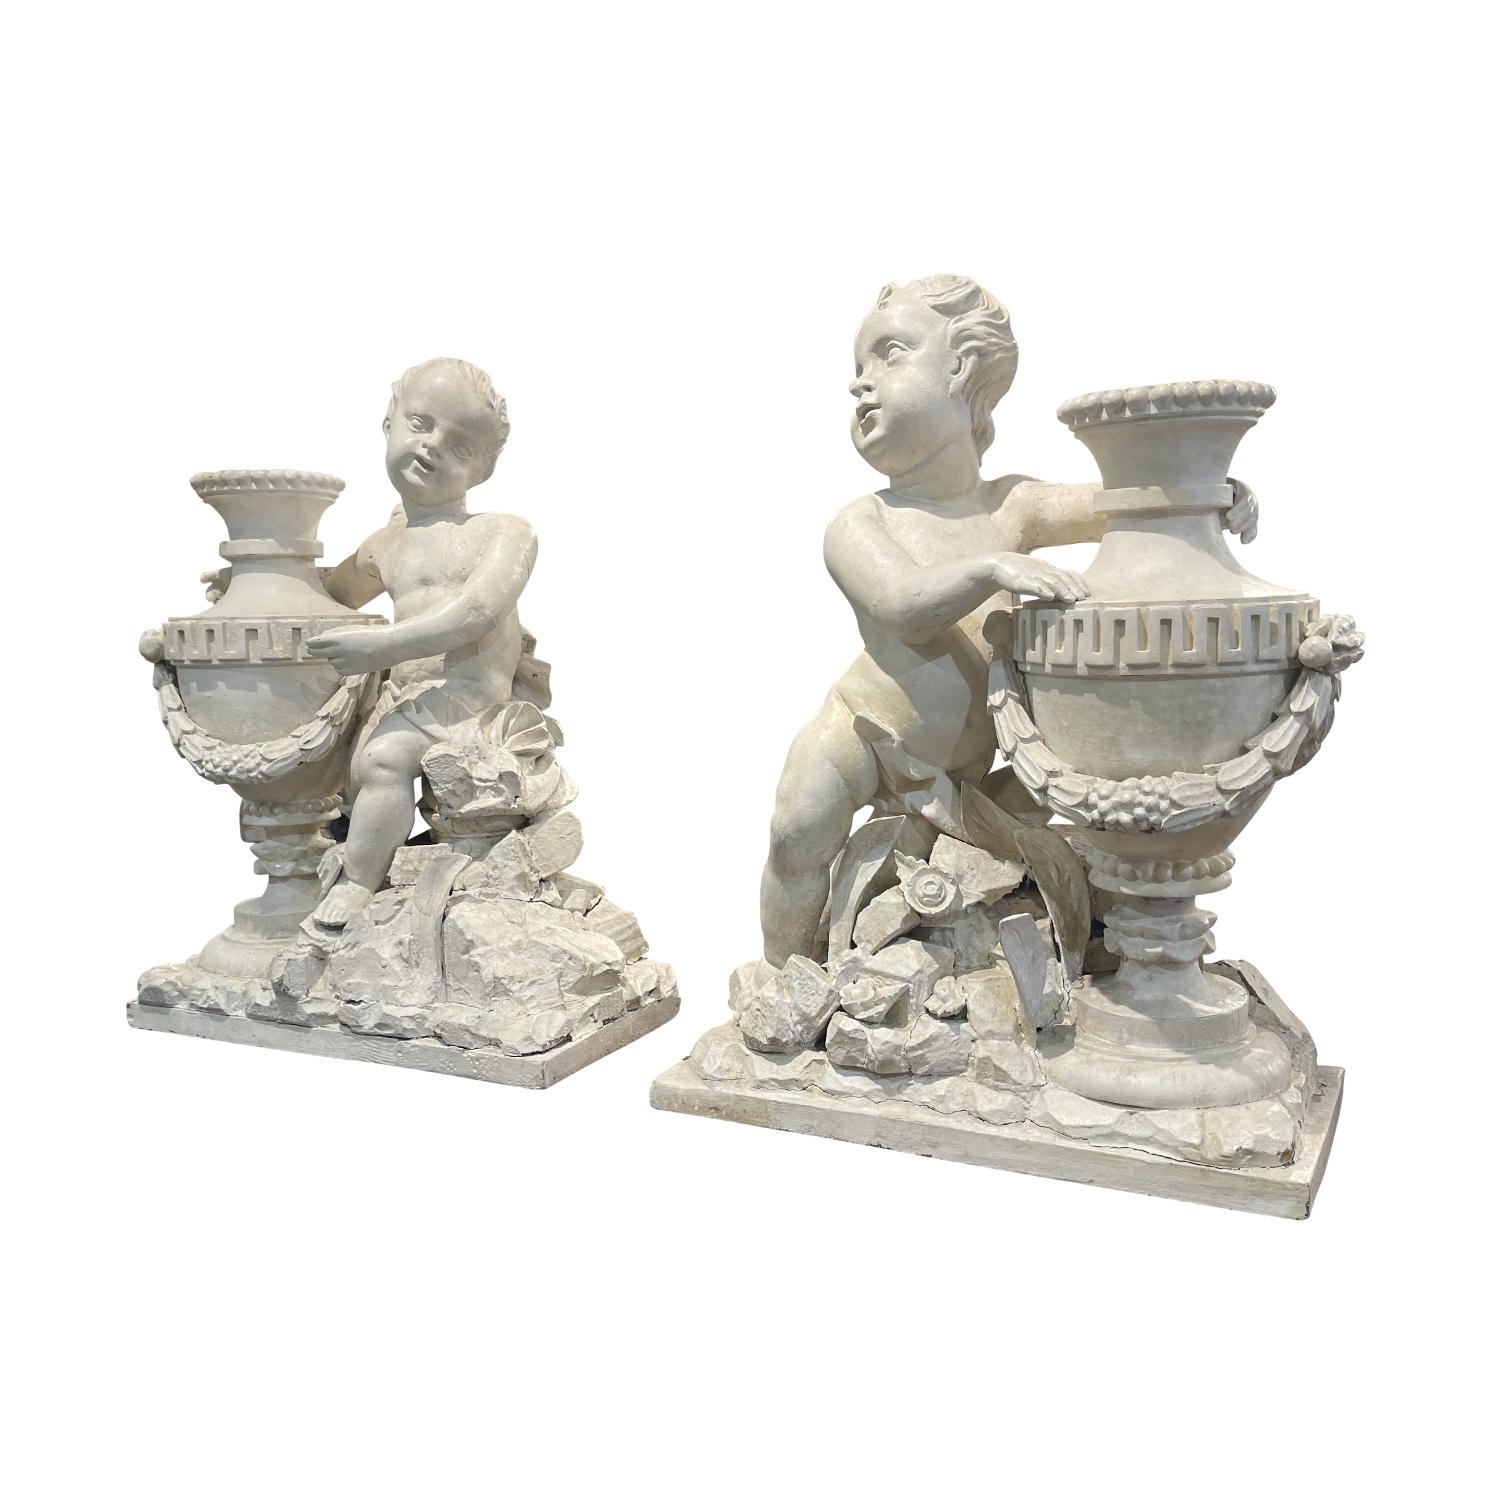 Paire de statuettes Putti ou Chérubins de l'époque Louis XVI, de couleur blanc-gris. Sculptés à la main et patinés en noyer dans leur état d'origine antique. Cette paire de putti parisiens se font face et sont élégamment drapés autour des hanches.